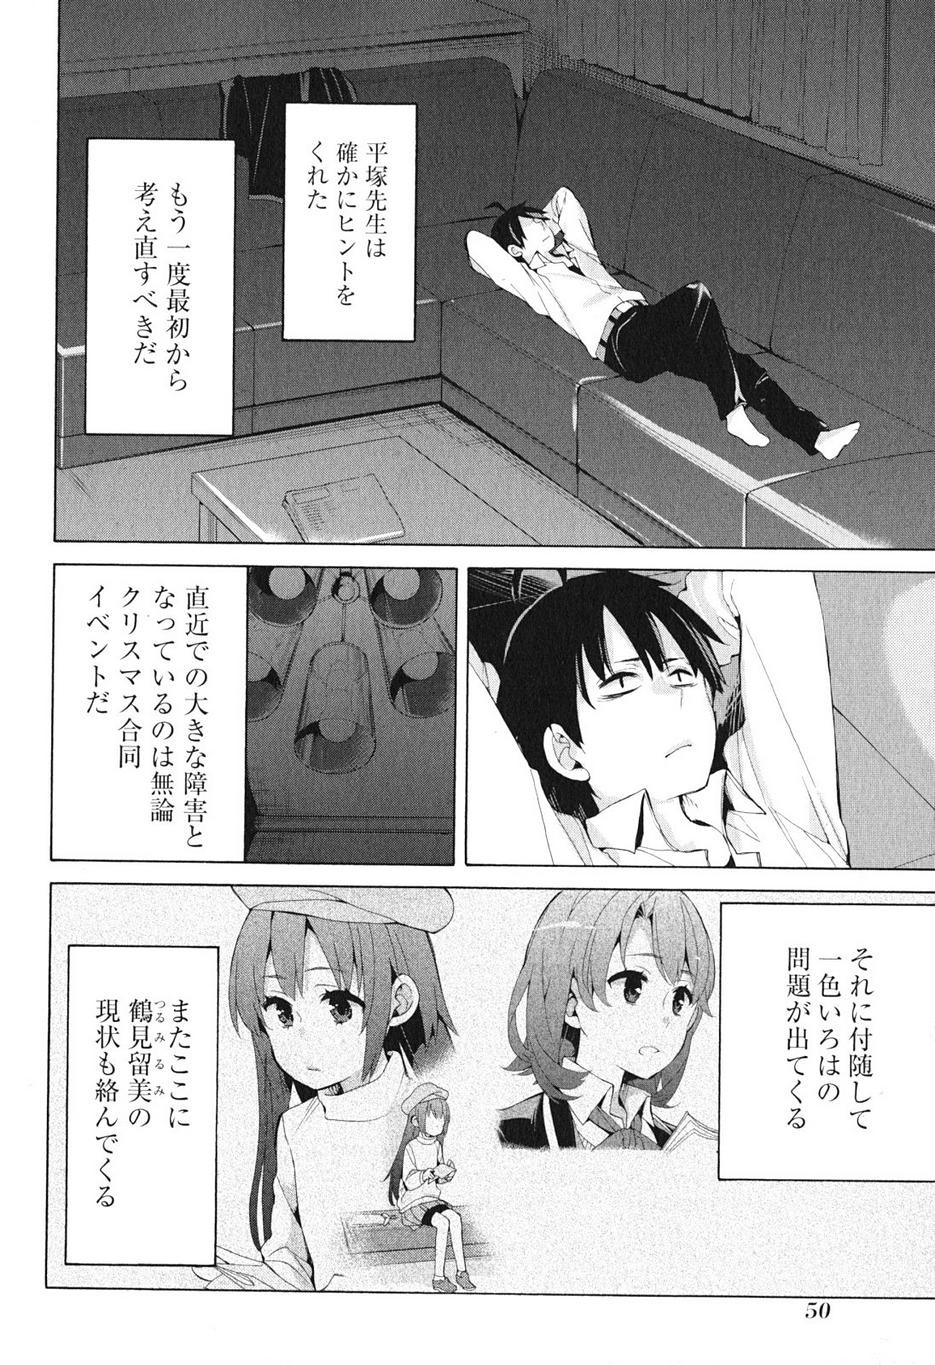 Yahari Ore no Seishun Rabukome wa Machigatte Iru. - Monologue - Chapter 40 - Page 2